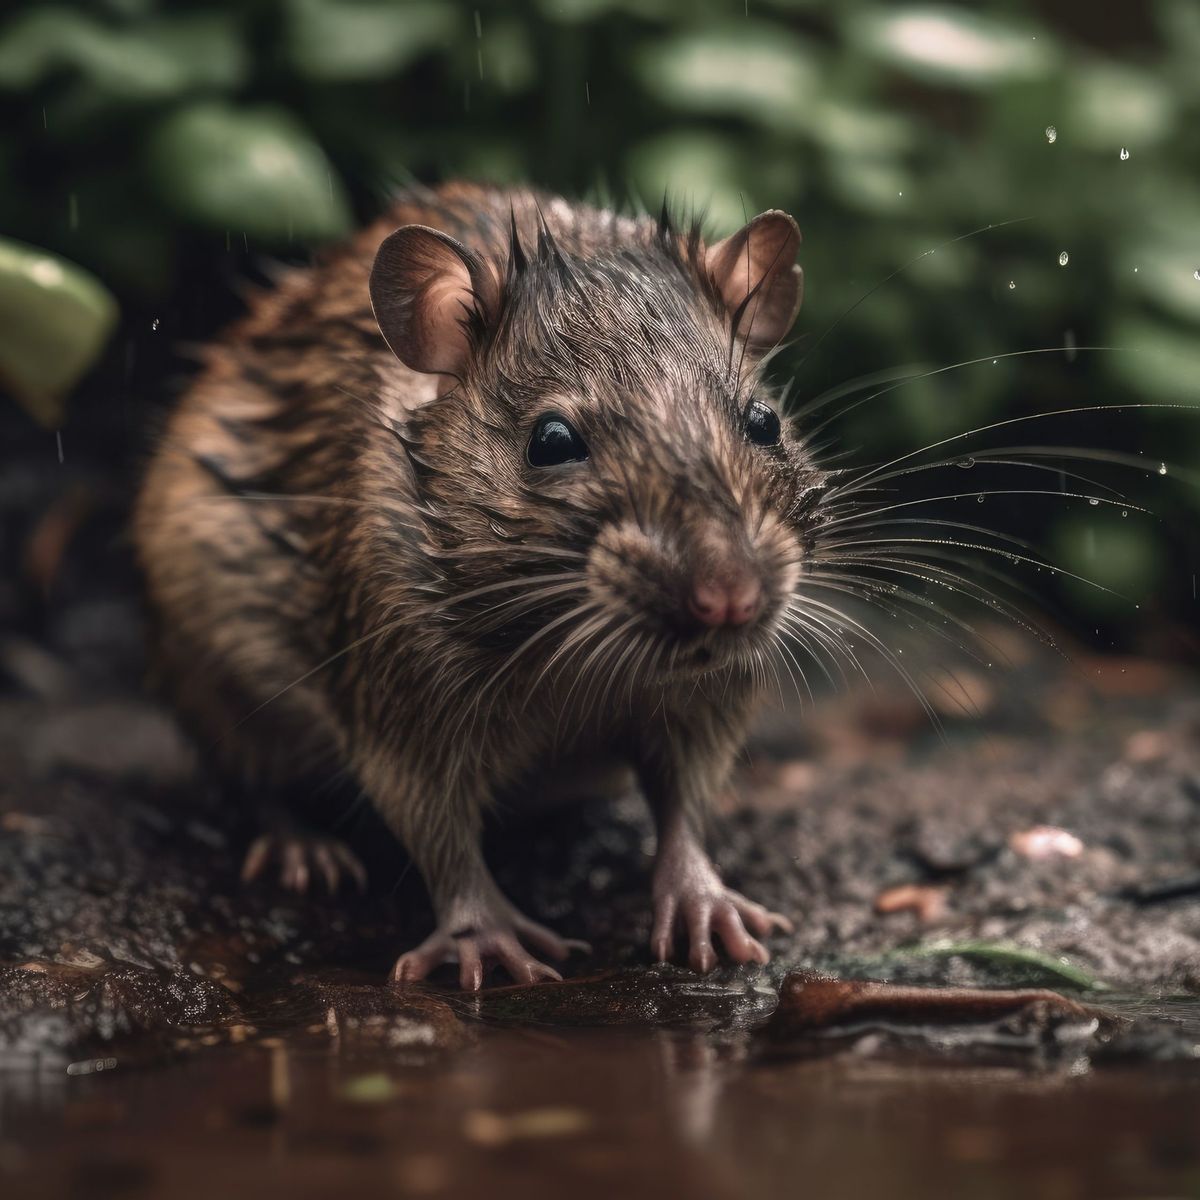 Ratten loswerden: So kannst du sie mit Chili und Katzenstreu bekämpfen